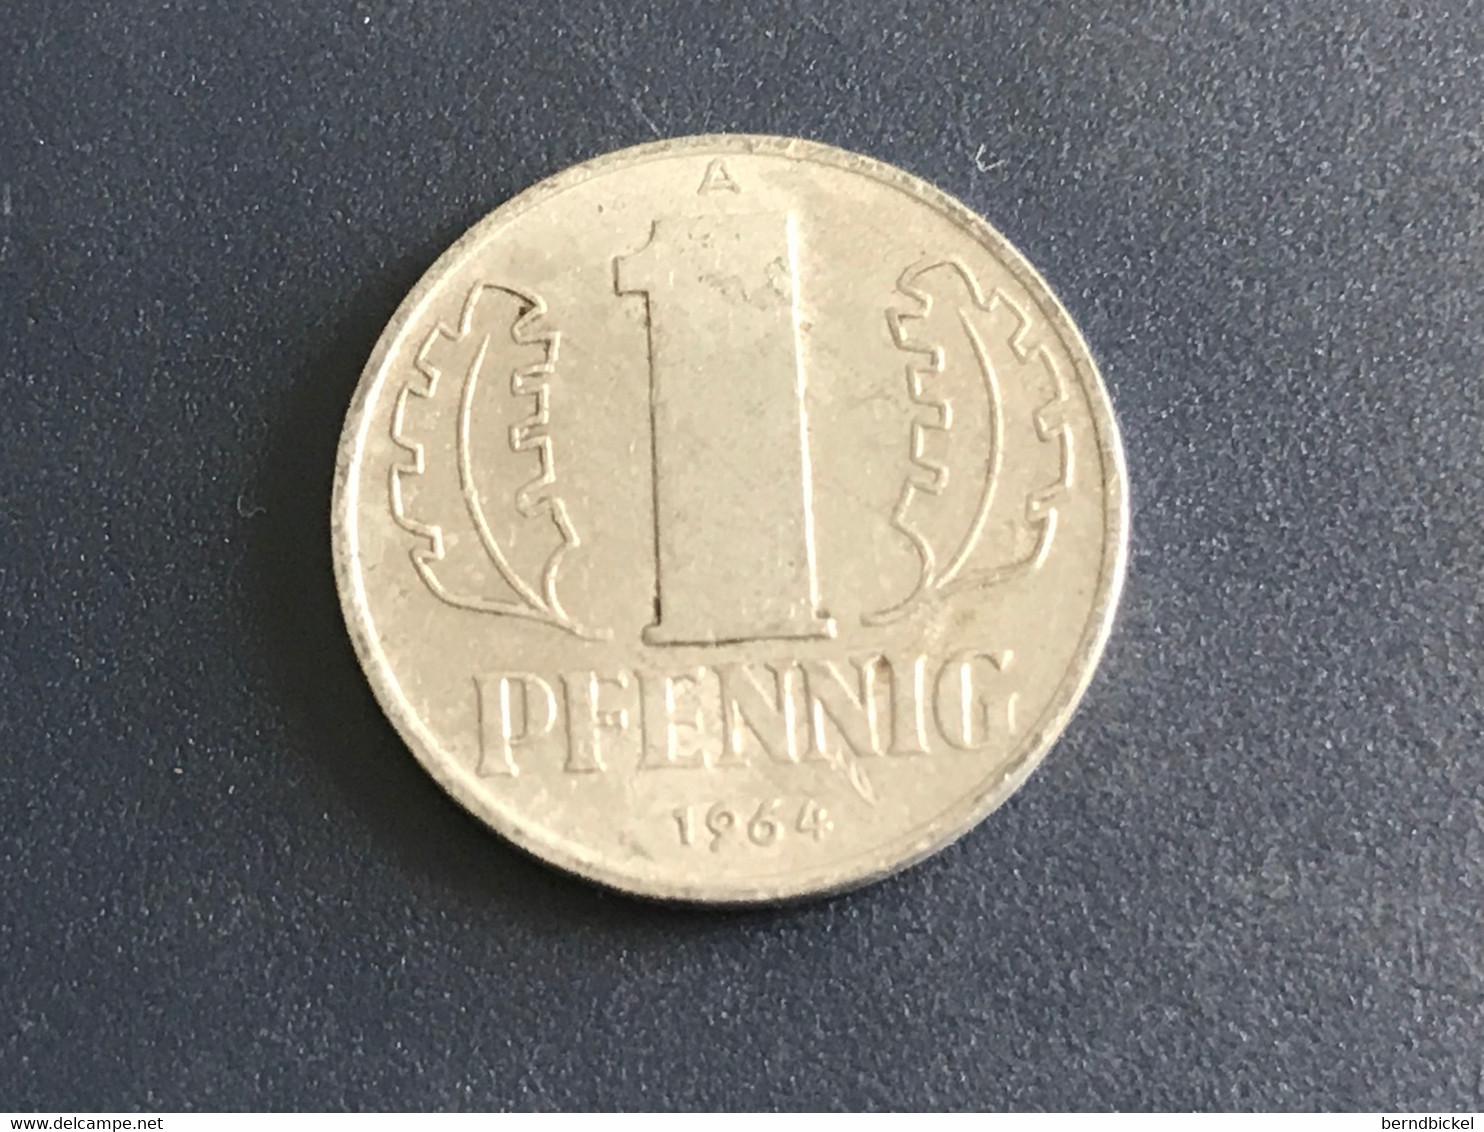 Münze Münzen Umlaufmüne Deutschland DDR 1 Pfennig 1964 - 1 Pfennig